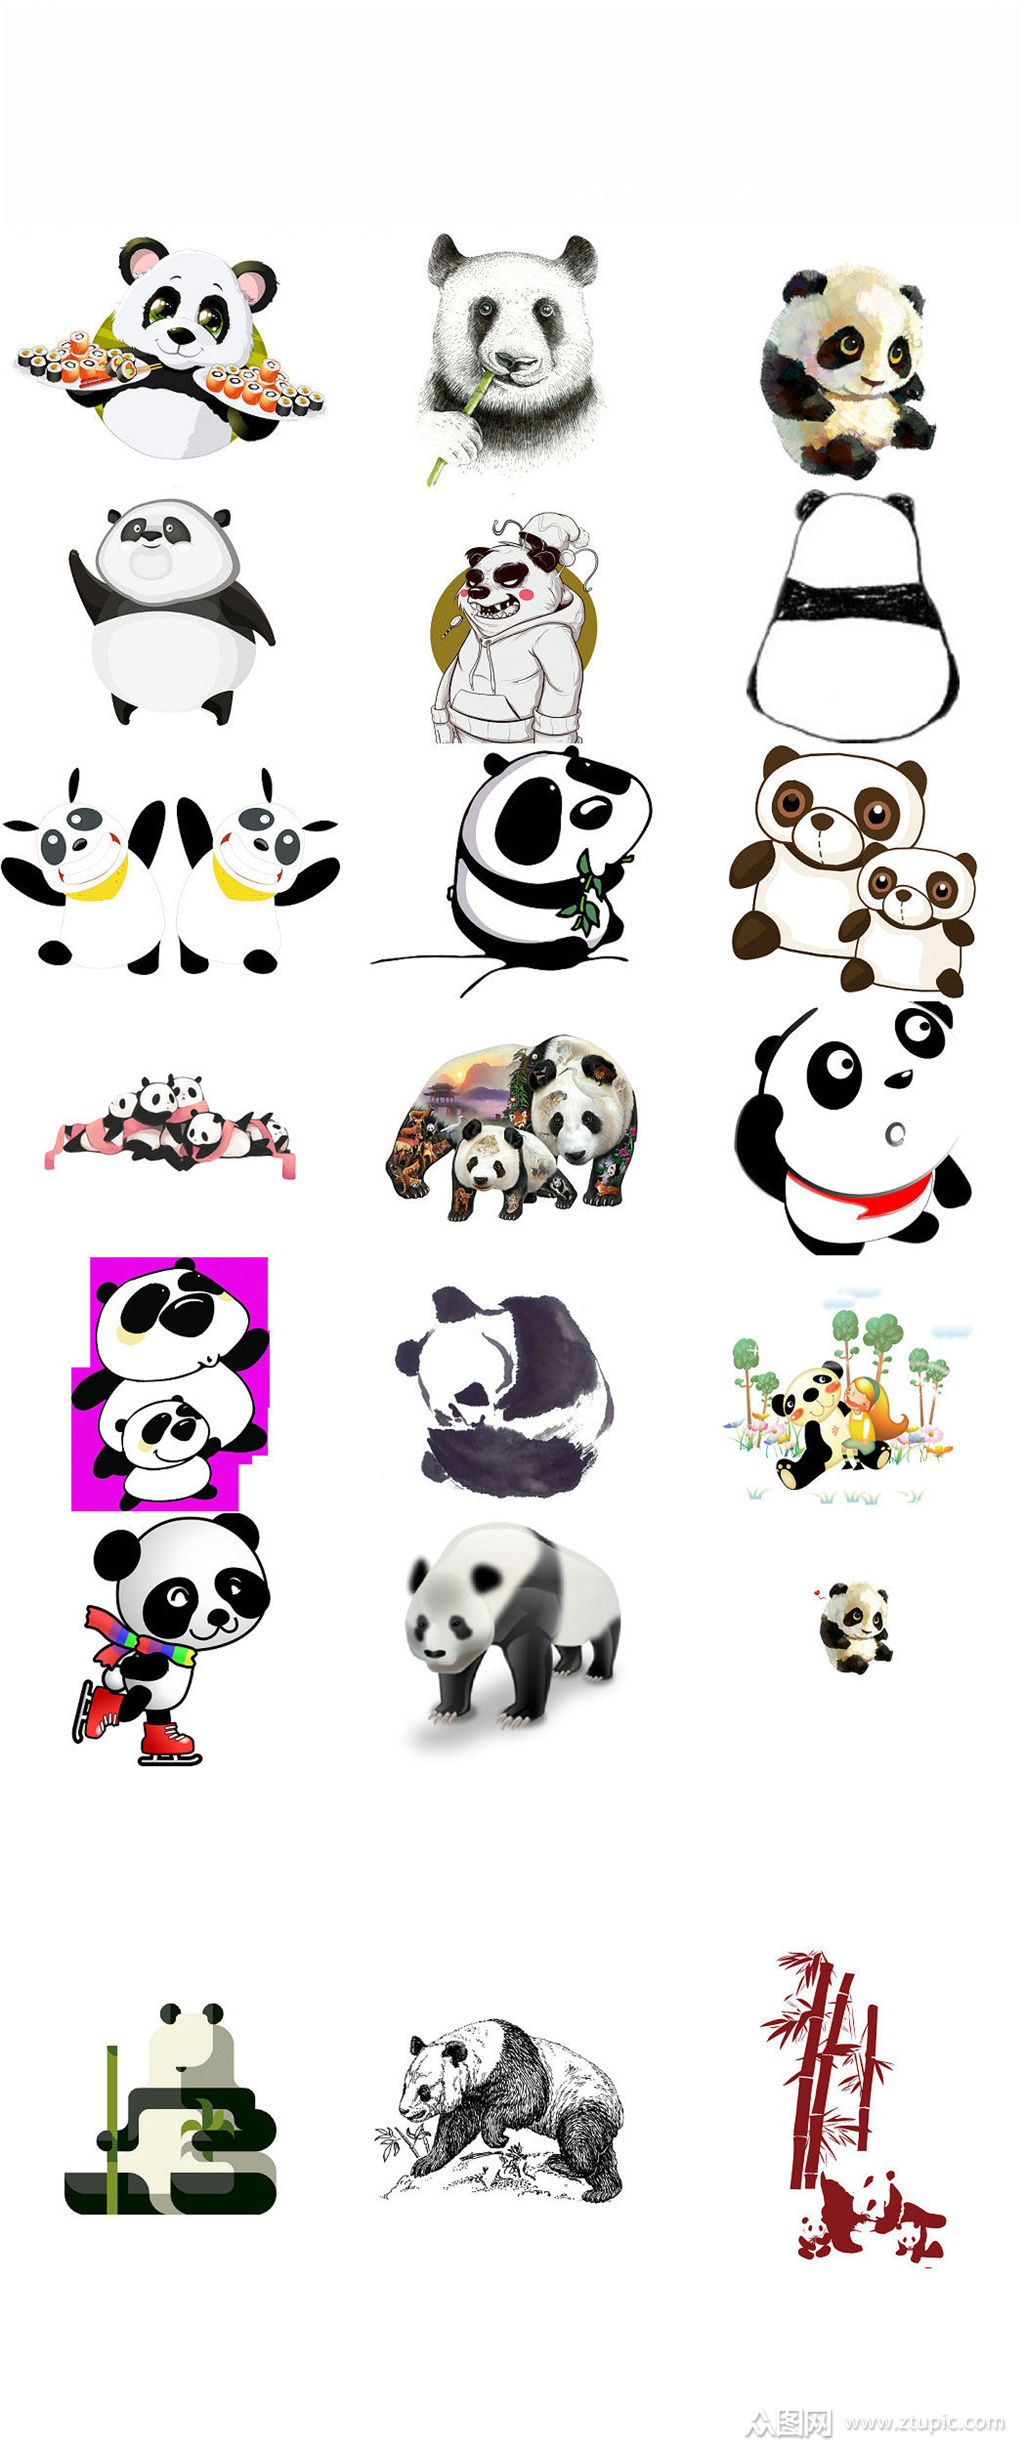 可爱卡通大熊猫图片png大全